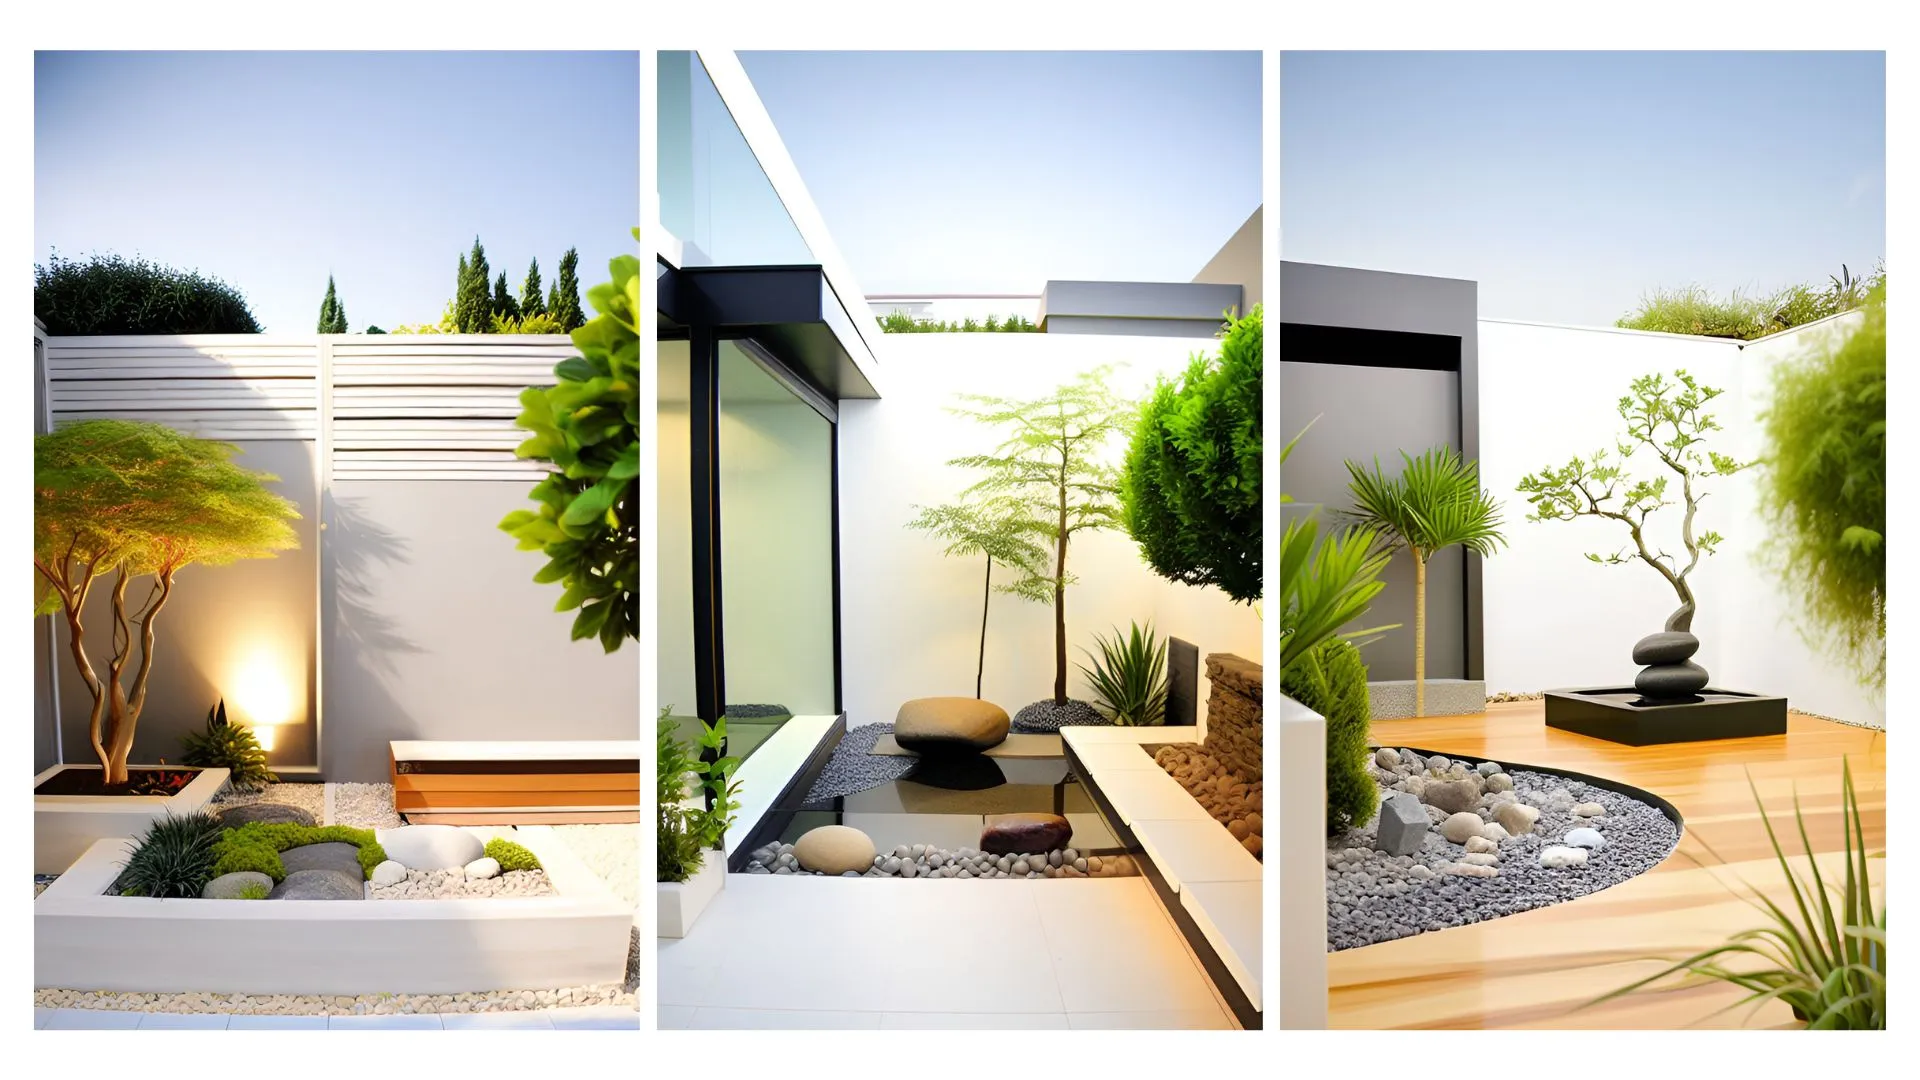 Image de différents jardins élégants style jardin zen / jardin japonais